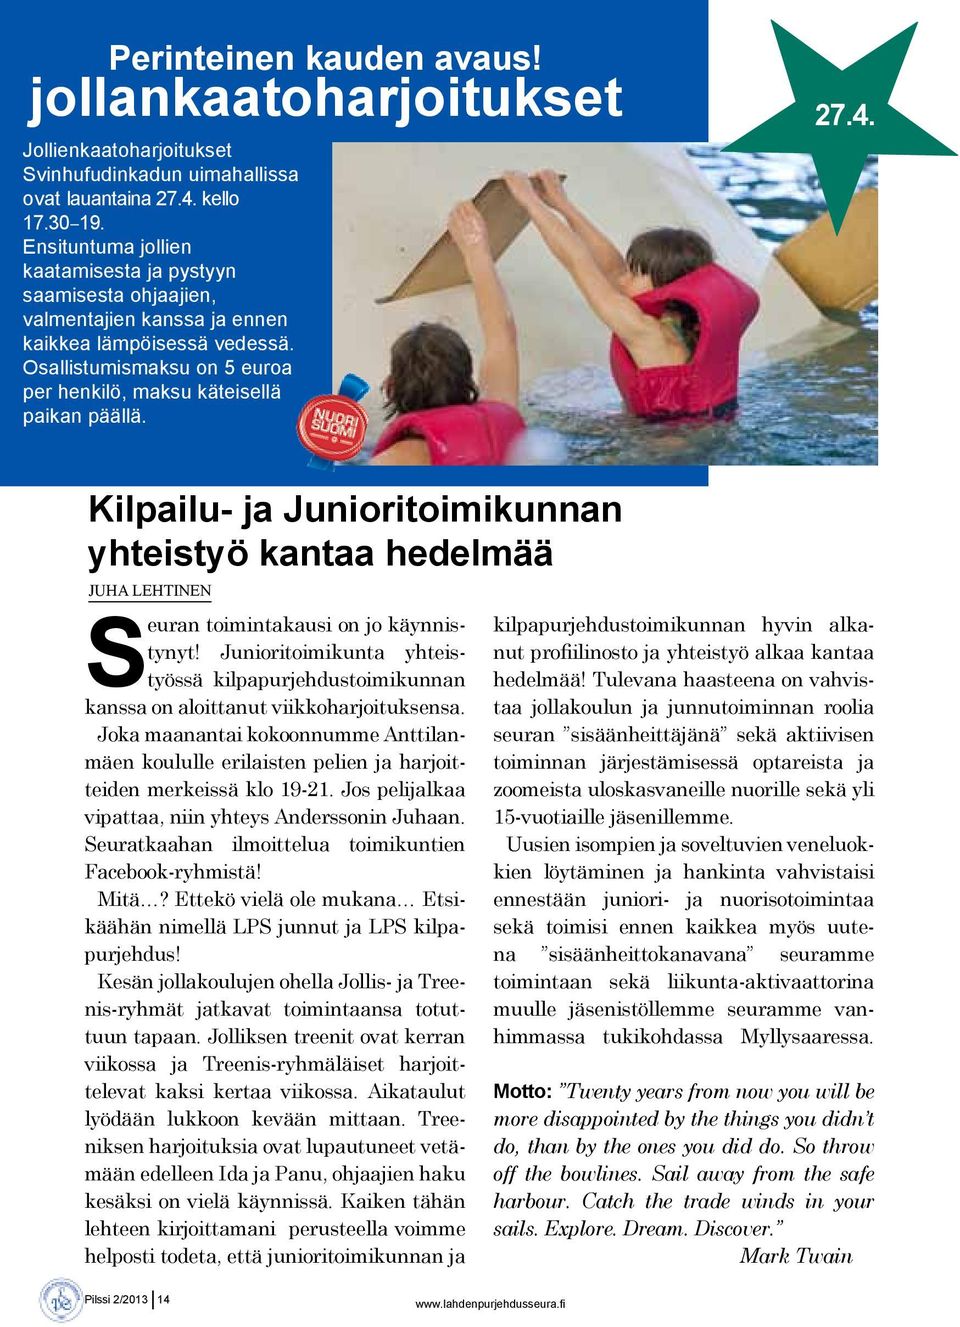 Kilpailu- ja Junioritoimikunnan yhteistyö kantaa hedelmää Juha Lehtinen Seuran toimintakausi on jo käynnistynyt!